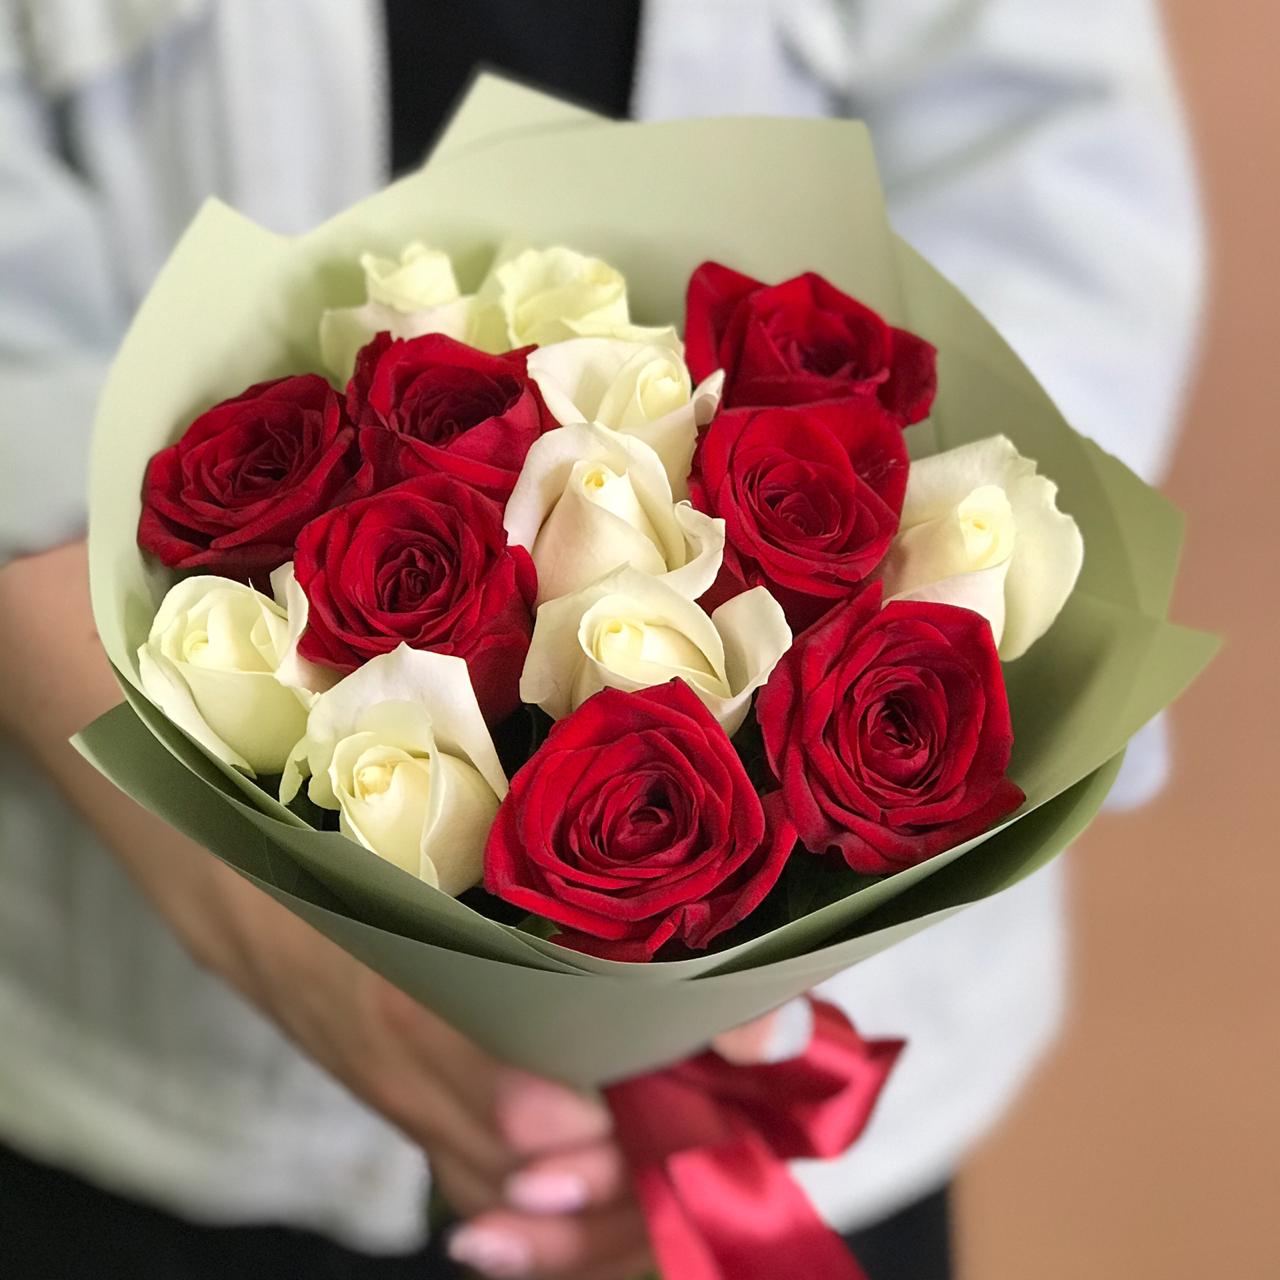 букет из красных и белых роз 15 шт 40 см Букет из красных и белых роз 15 шт. (40 см)